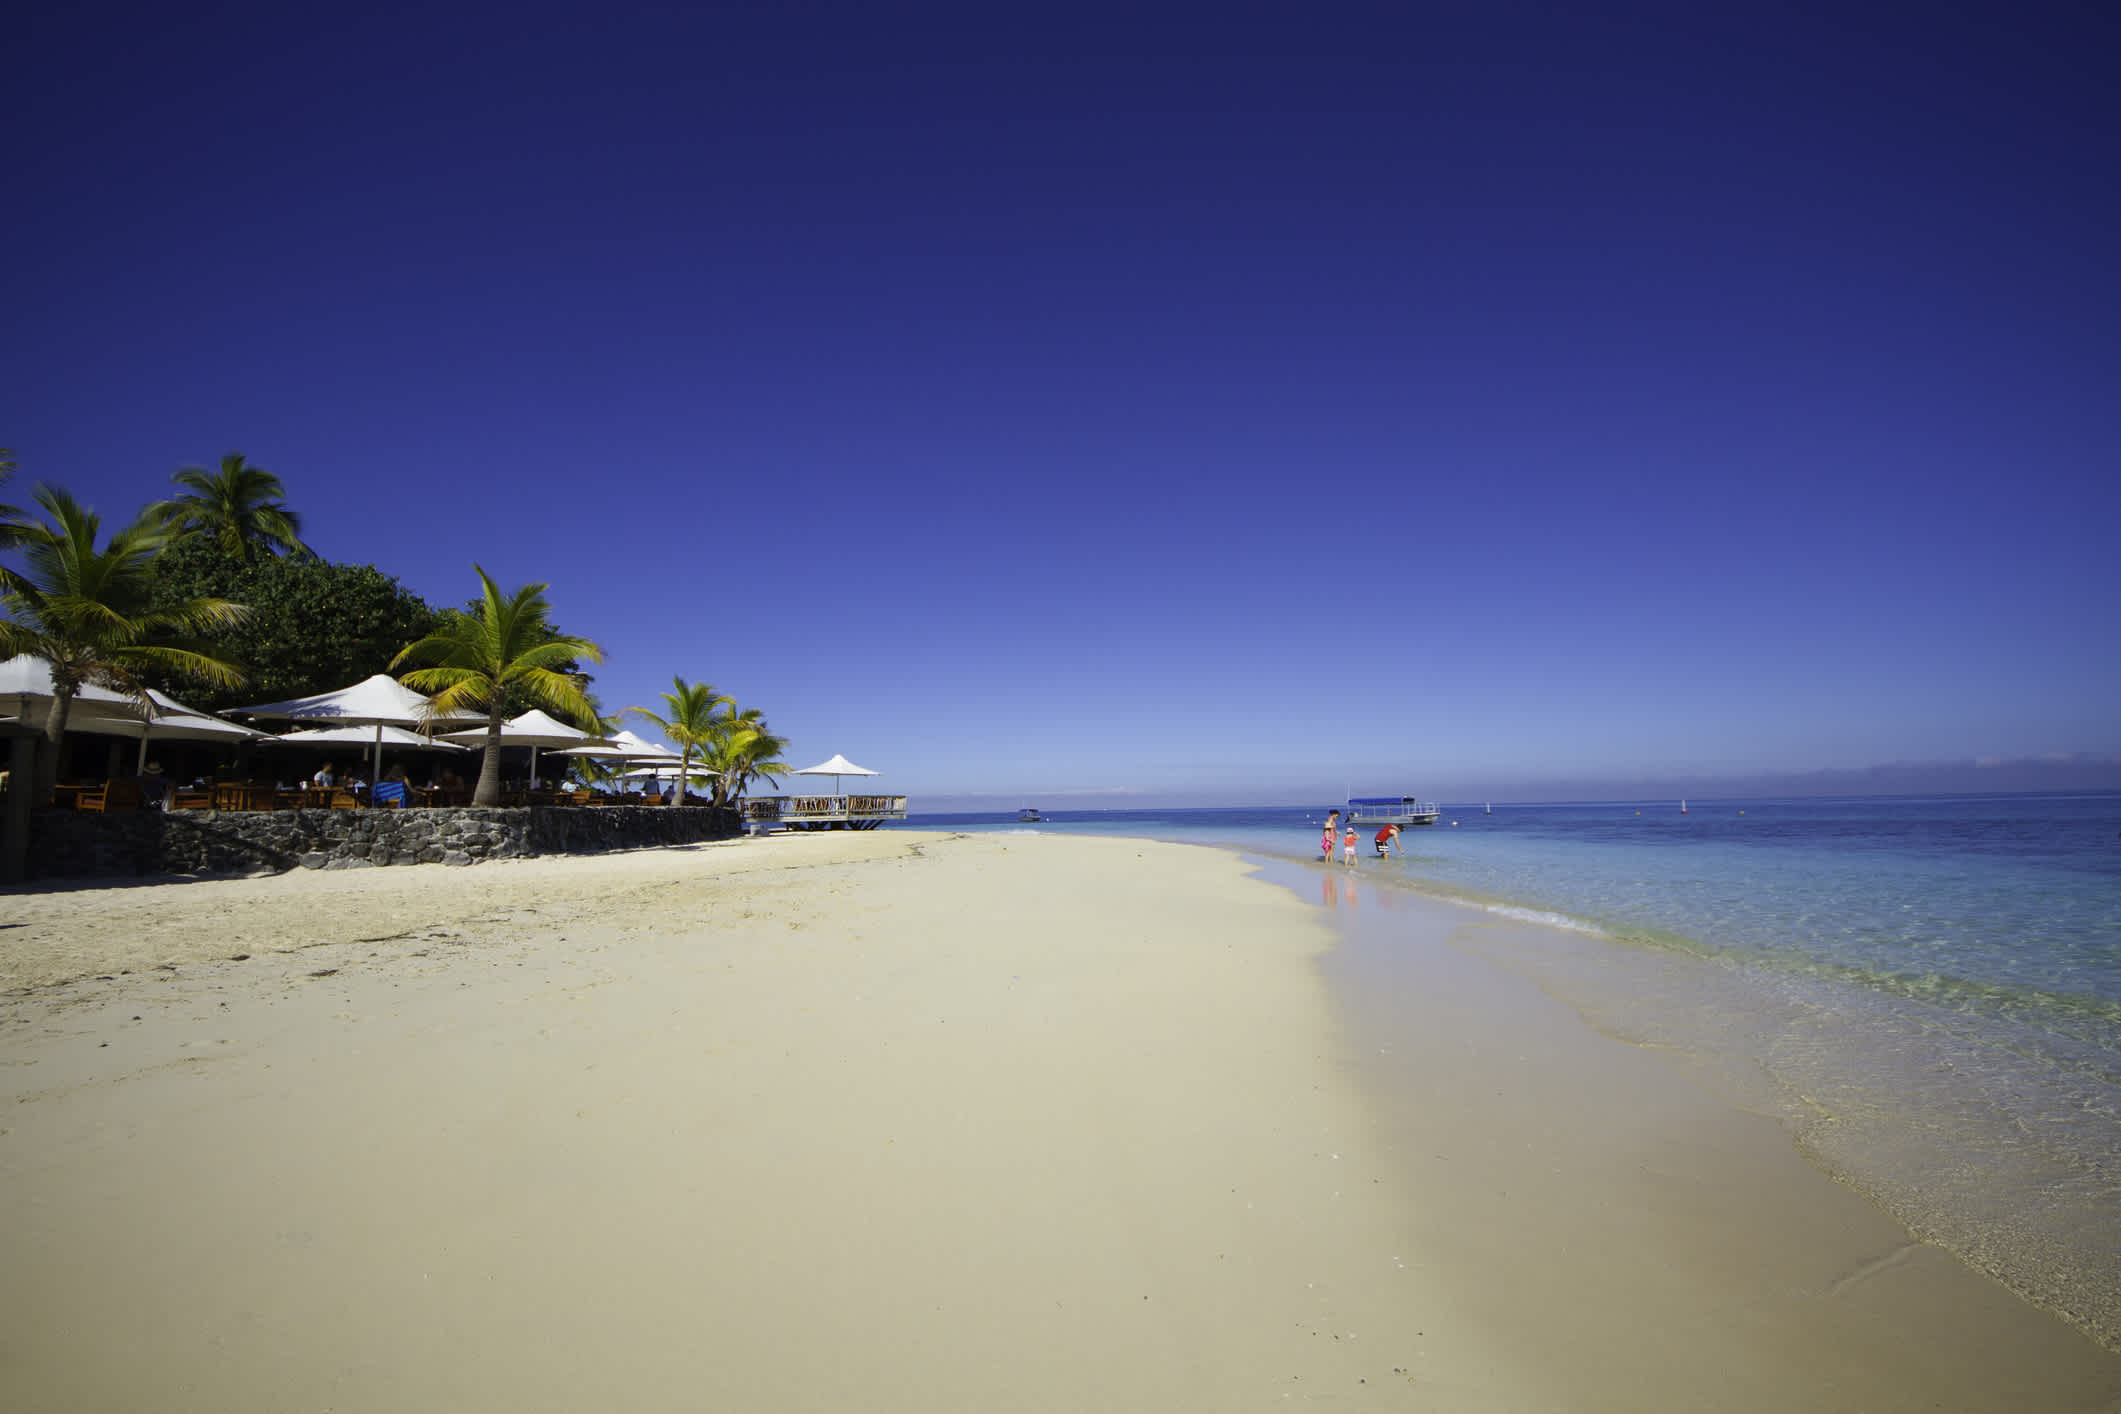 Tropischer Island Resort auf Fidschi.

